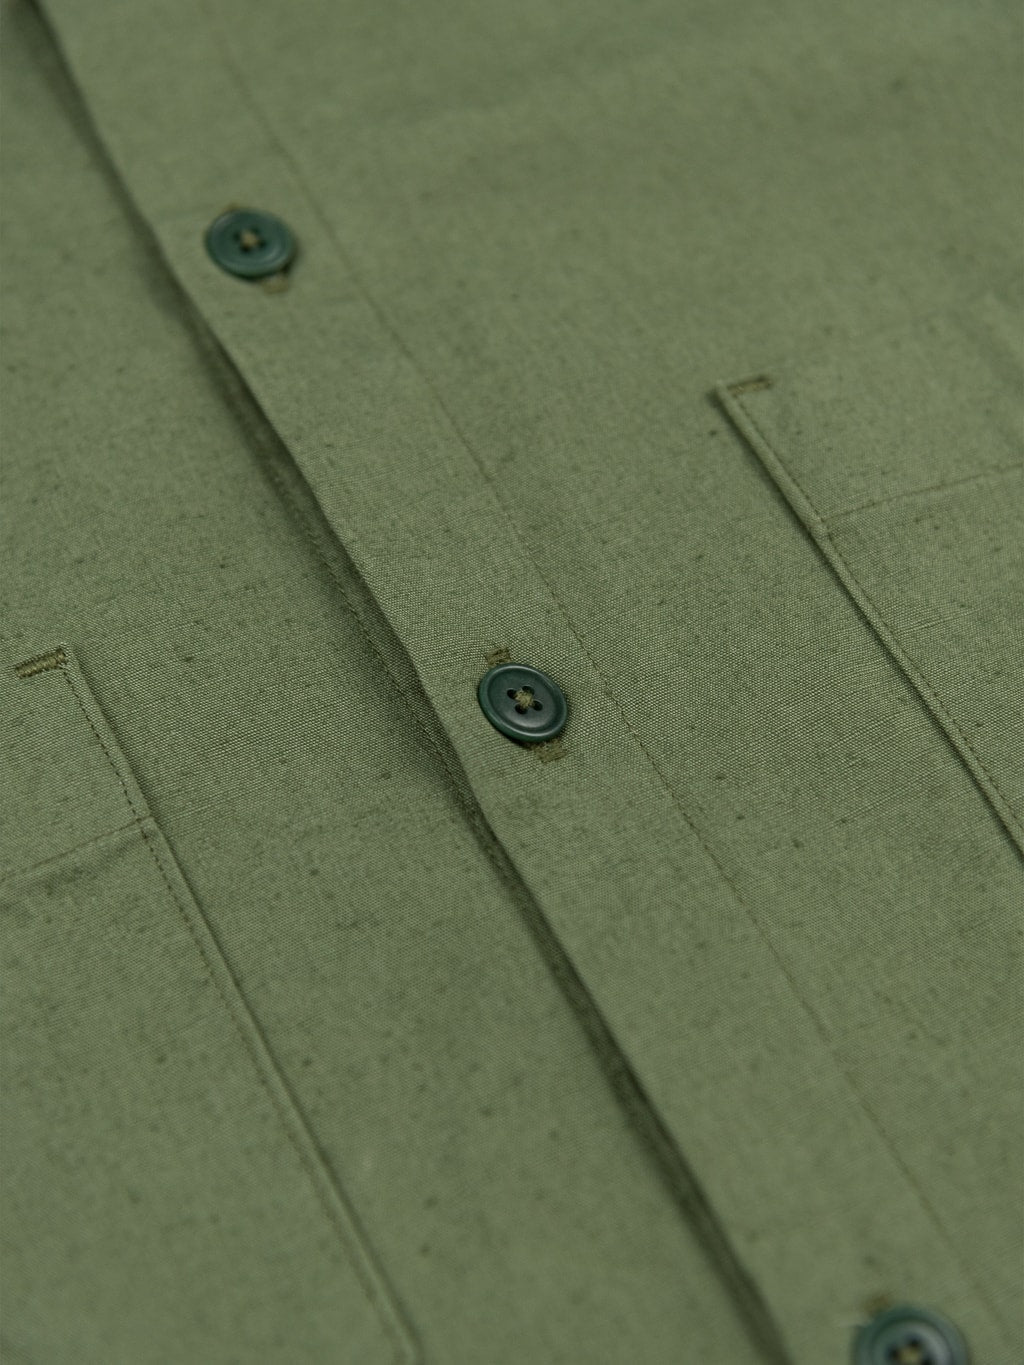 ues denim mechanic shirt sleeves shirt sage green buttons